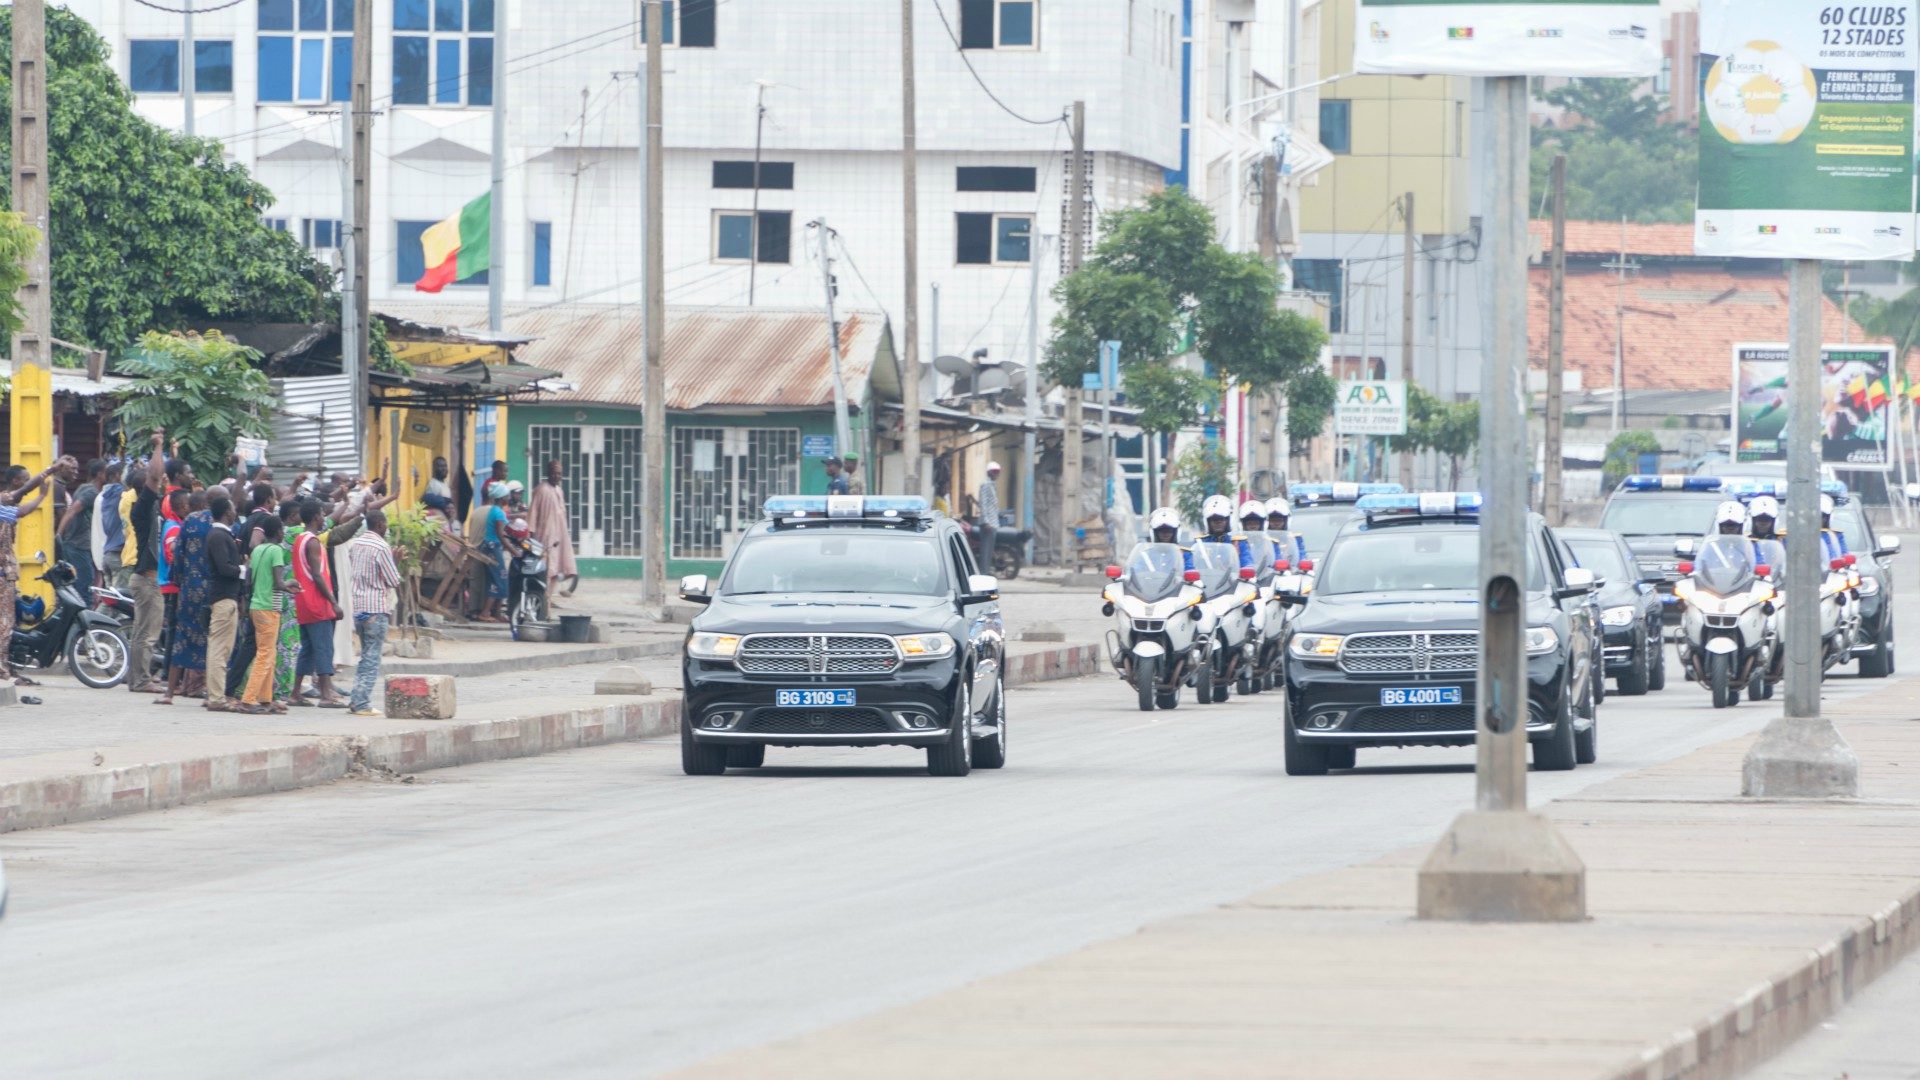 La situation politique est tendue au Bénin | © présidence de la République du Bénin/Flickr/CC BY-NC-ND 2.0